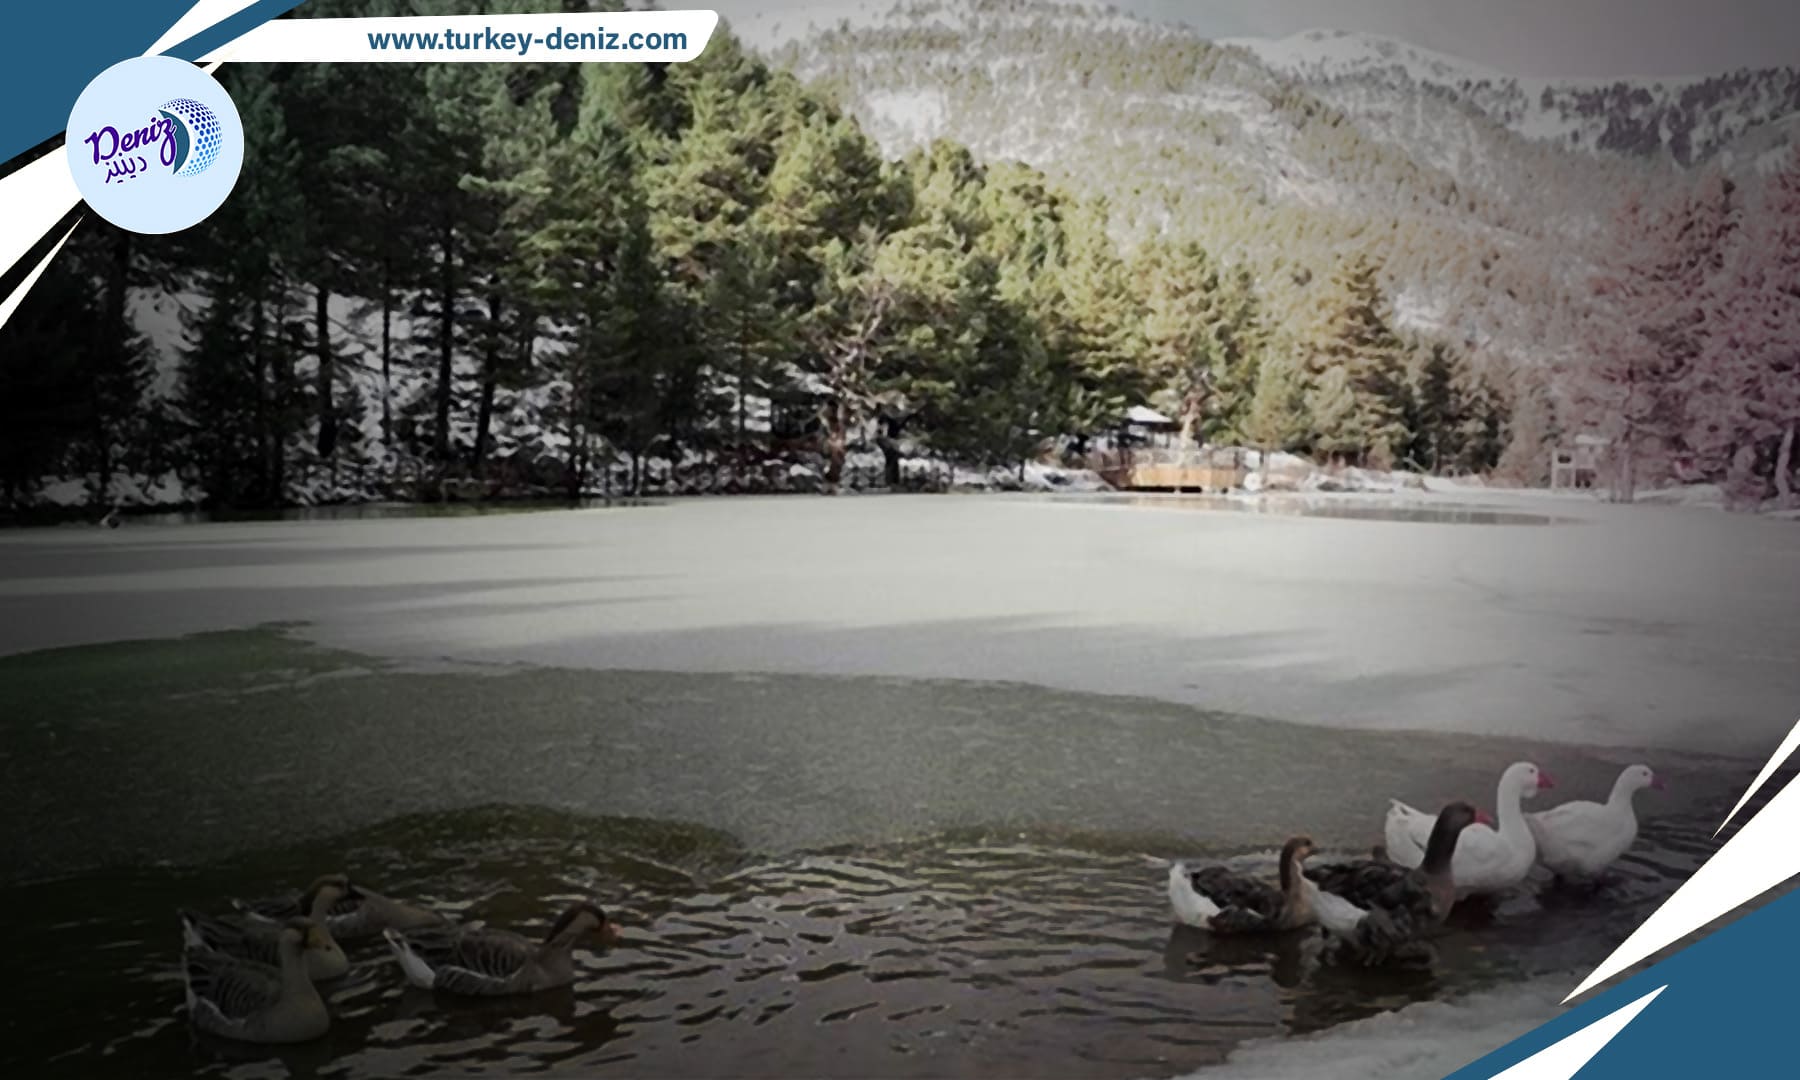 جمال الشتاء في تركيا: بحيرة "ليمني" تتحول إلى لوحة فنية في ولاية غوموش خانه